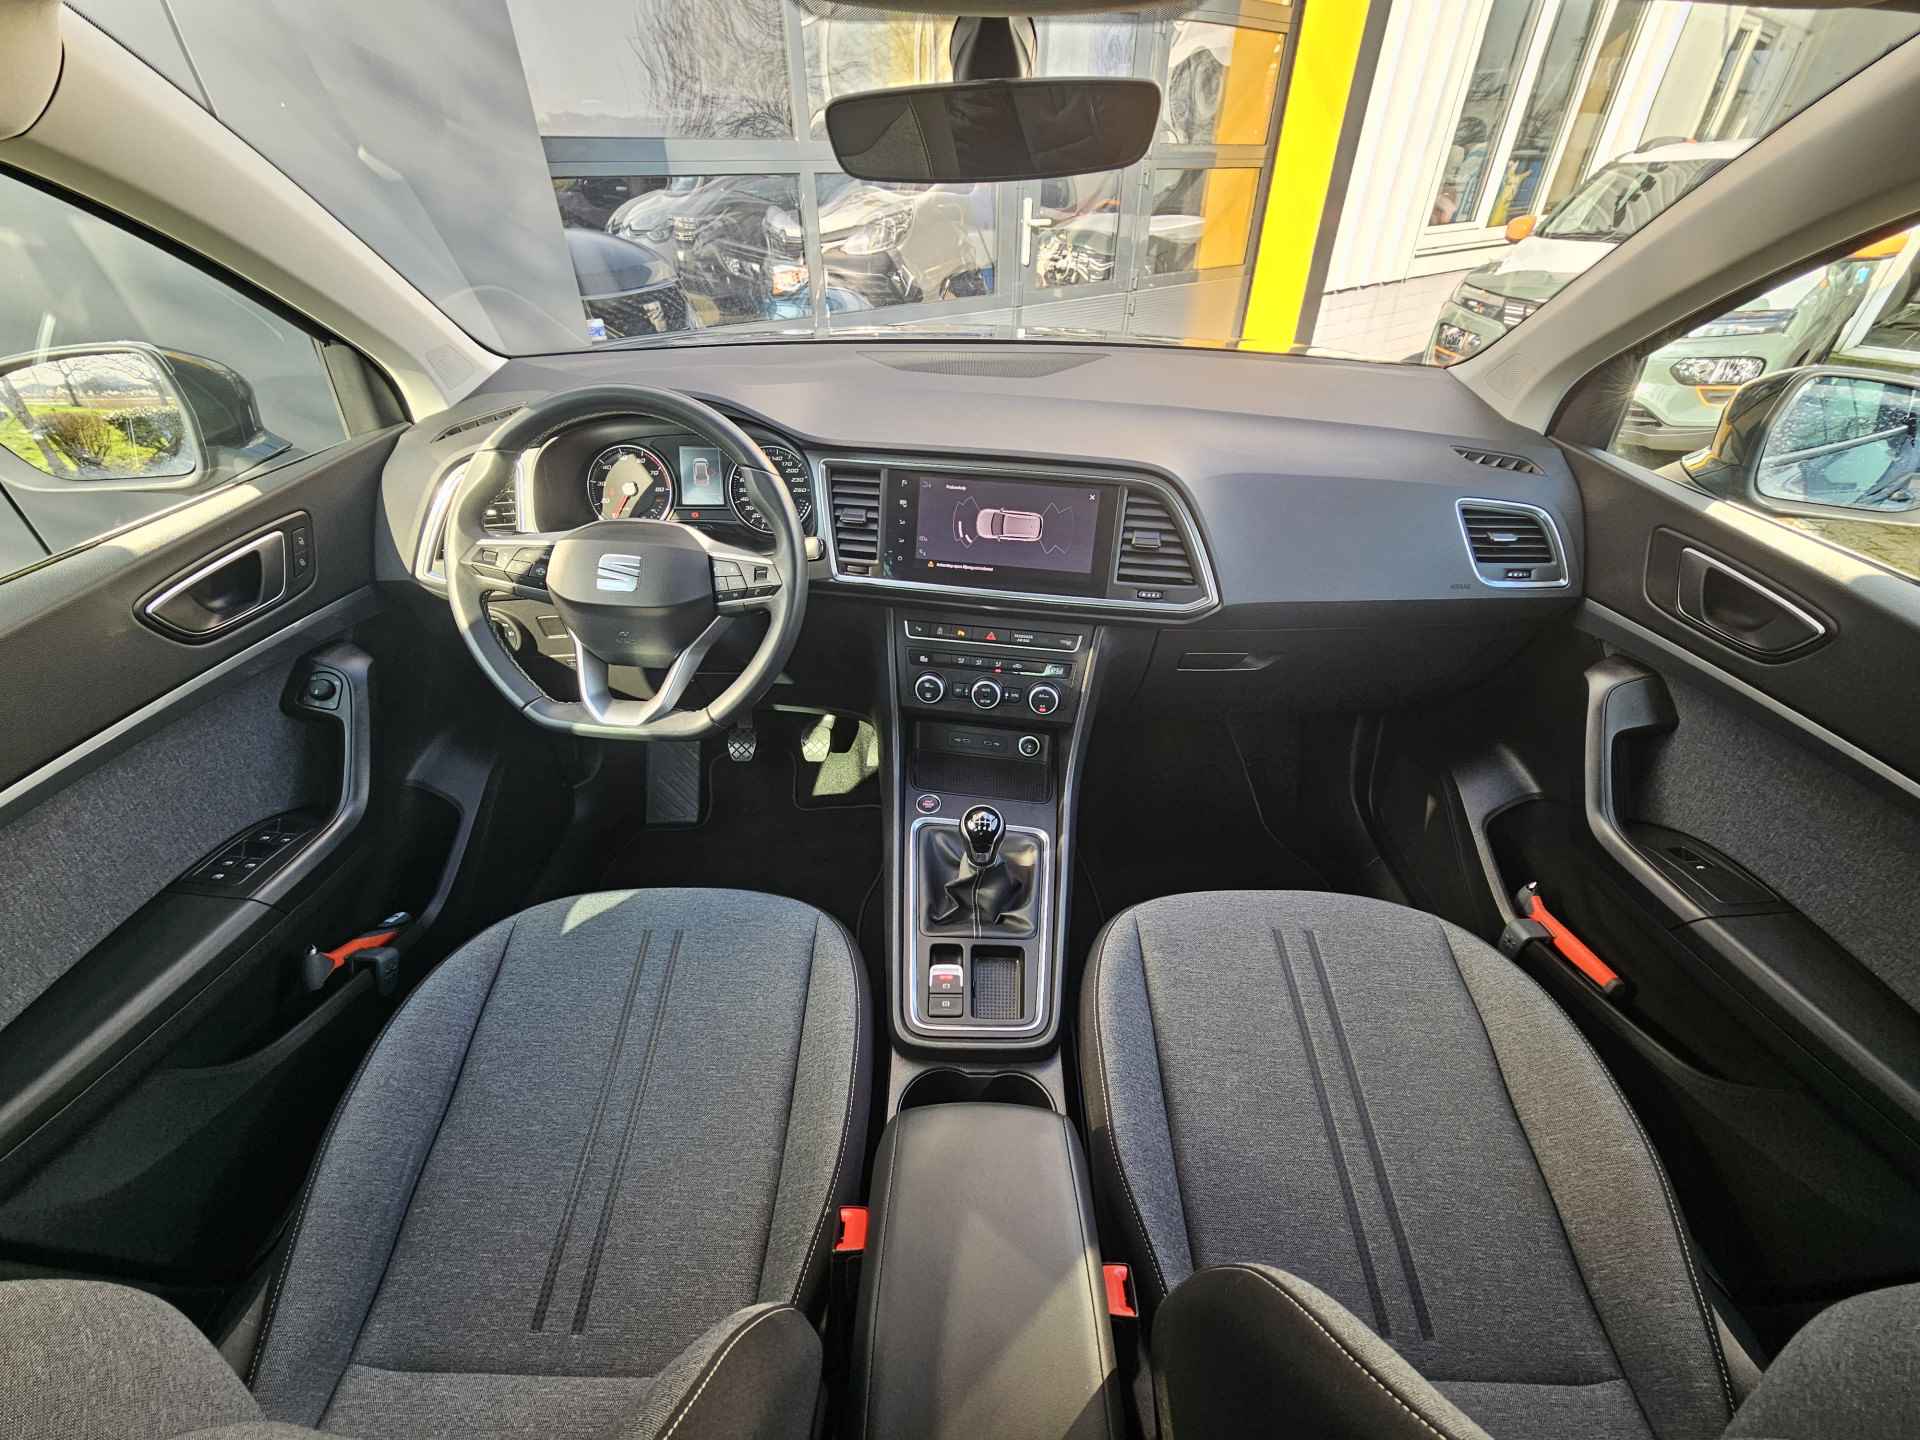 SEAT Ateca 1.0 TSI 110 pk Style Business Intense | Navigatie | LED | Lm velgen | Camera | Sensoren | All Season banden | incl. Bovag rijklaarpakket met 12 maanden garantie | - 15/35